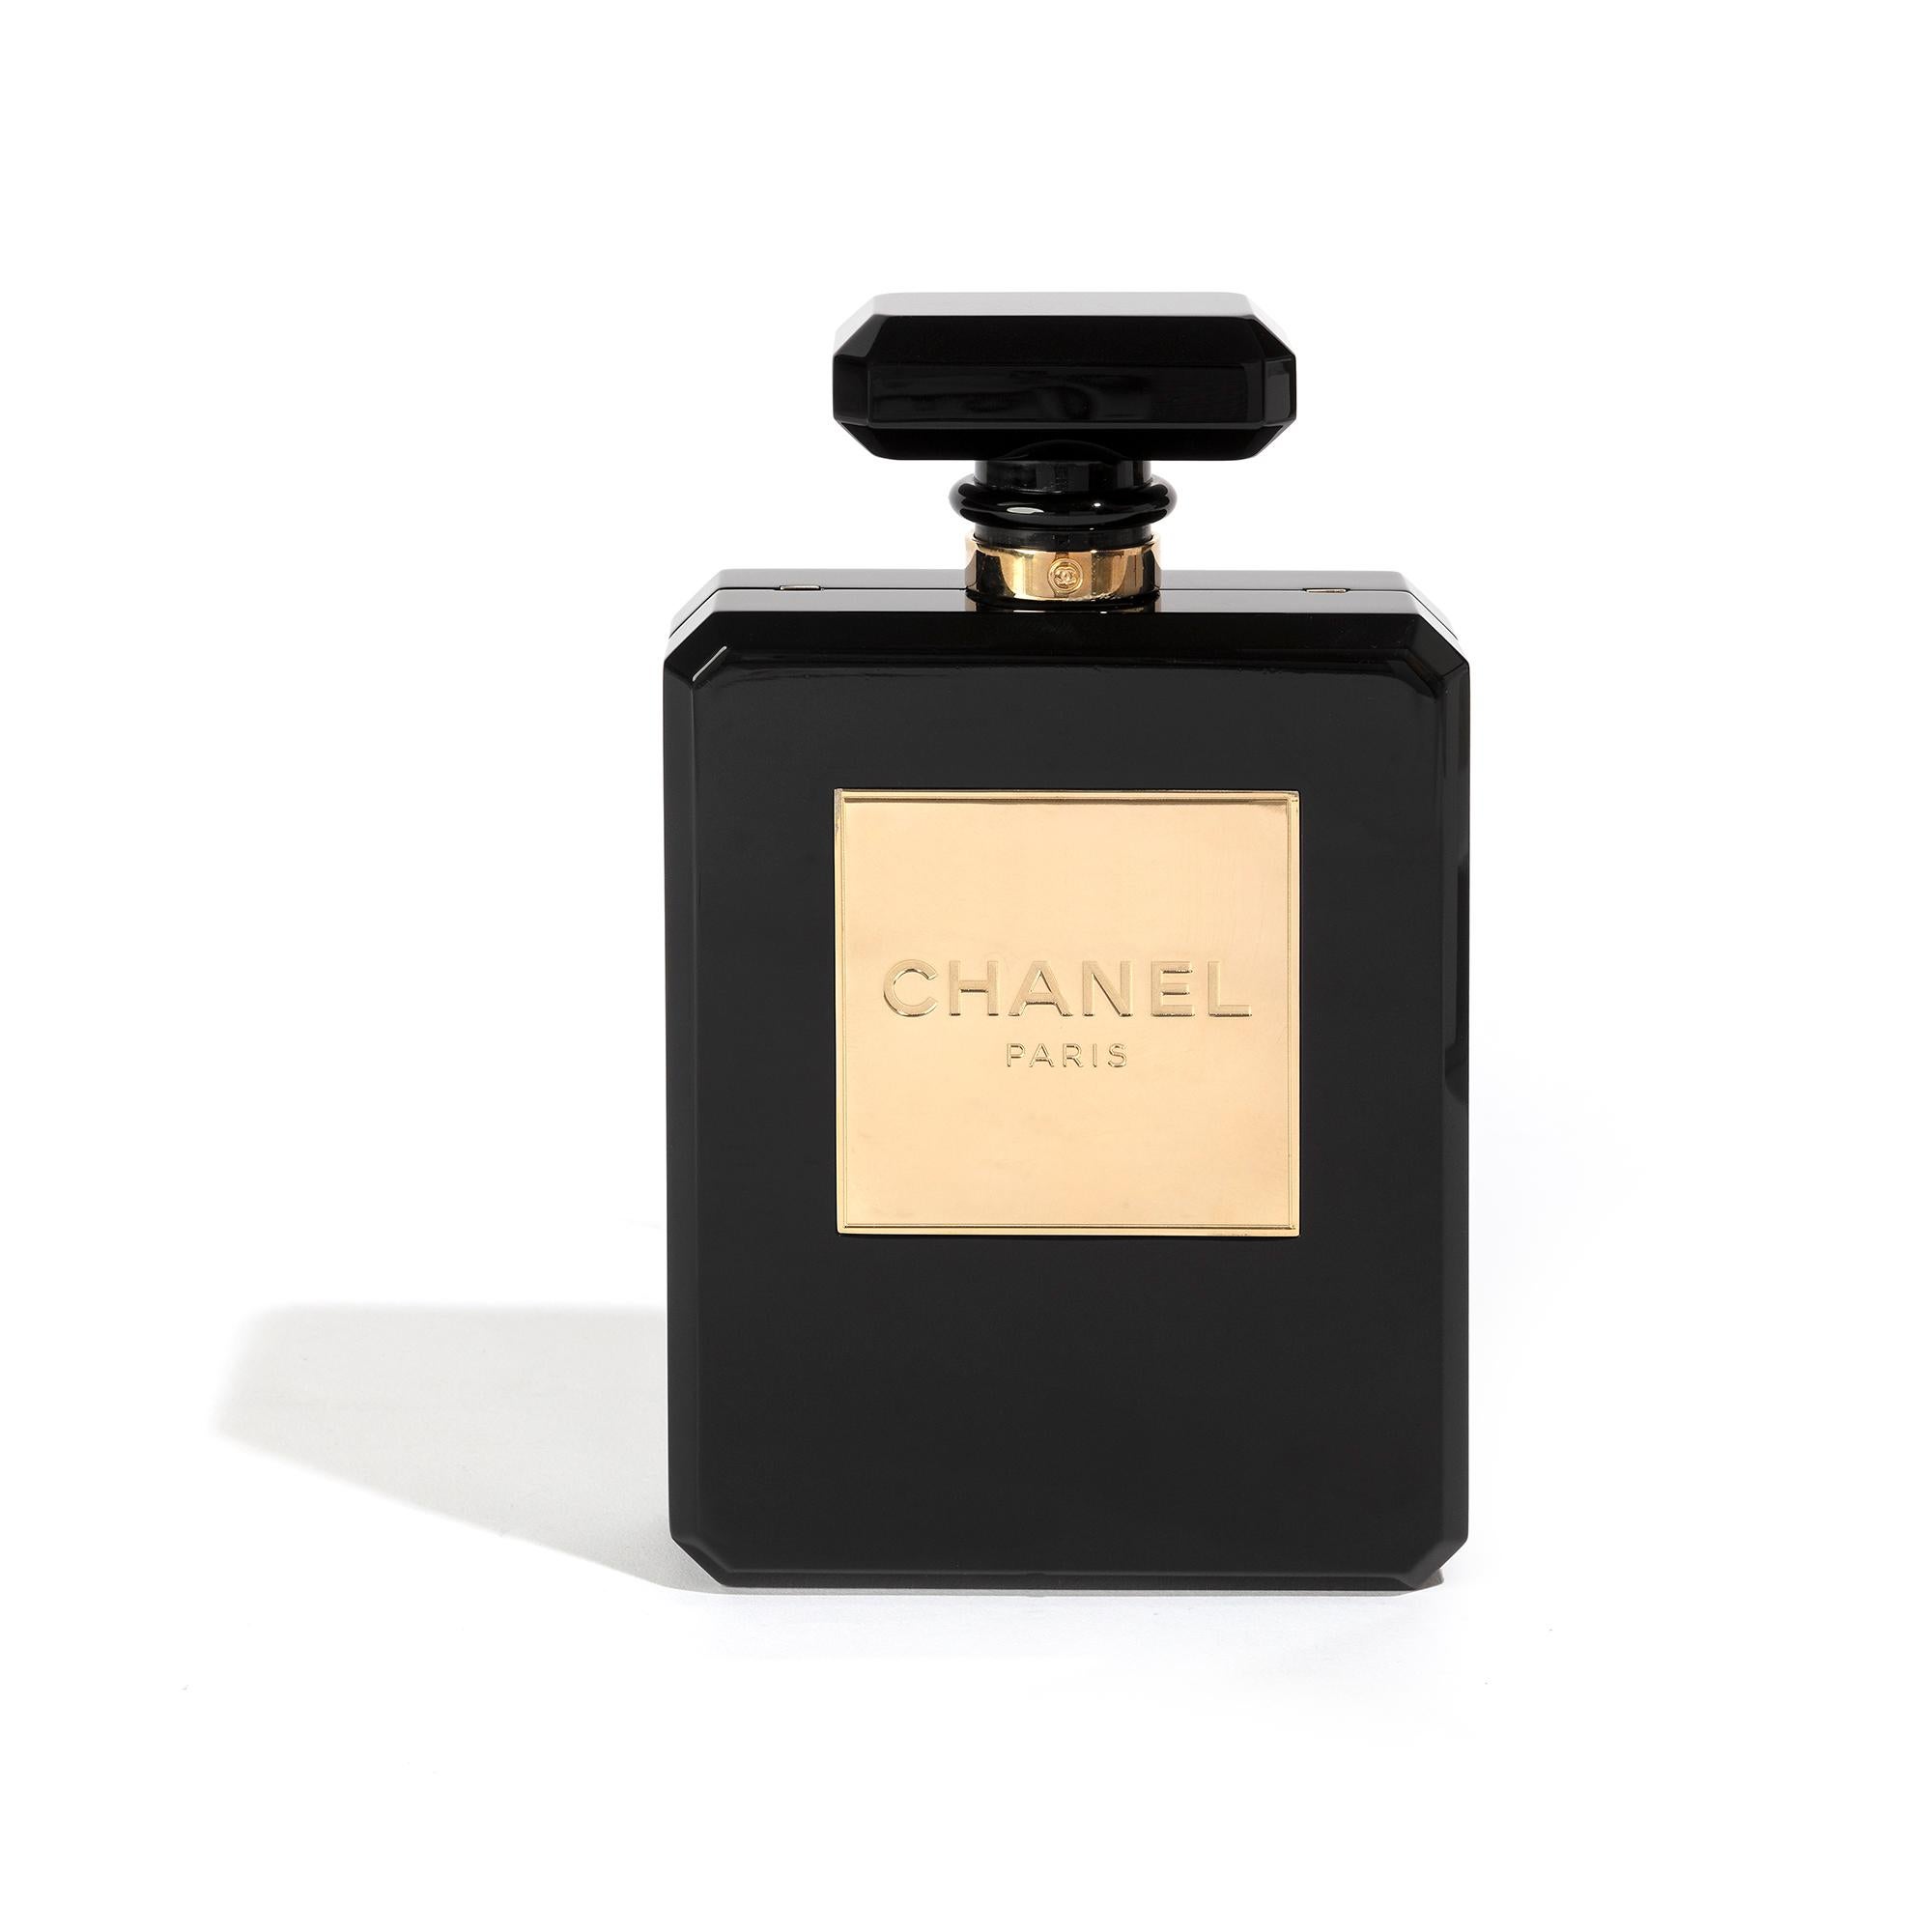 Il existe peu de symboles plus proches du cœur de la marque Chanel qu'un flacon de parfum N5. Pièce de collection rare, cette minaudière Chanel N5 est fabriquée en plexiglas noir et dotée de ferrures plaquées or pâle et d'une lanière en chaîne